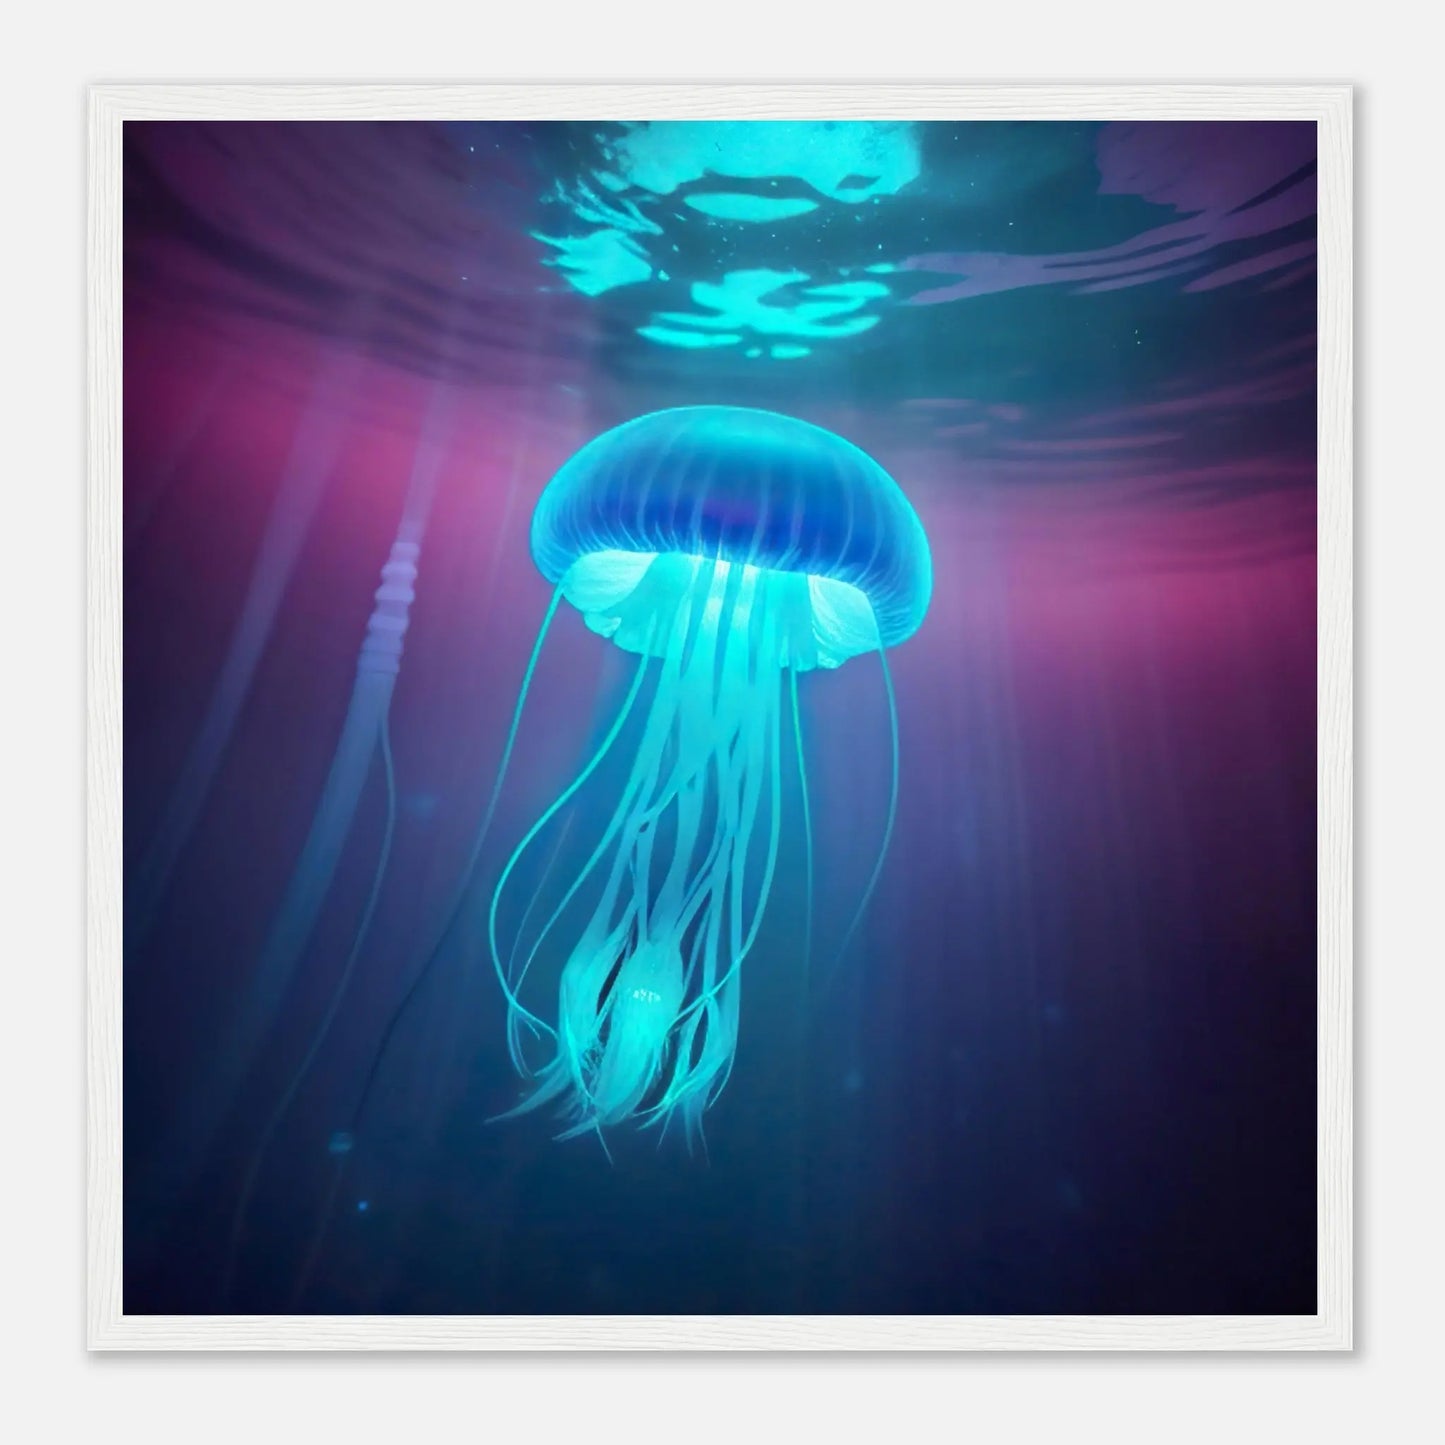 Gerahmtes Premium-Poster - Qualle - Digitaler Stil, KI-Kunst - RolConArt, Unterwasserlandschaften, 50x50-cm-20x20-Weißer-Rahmen